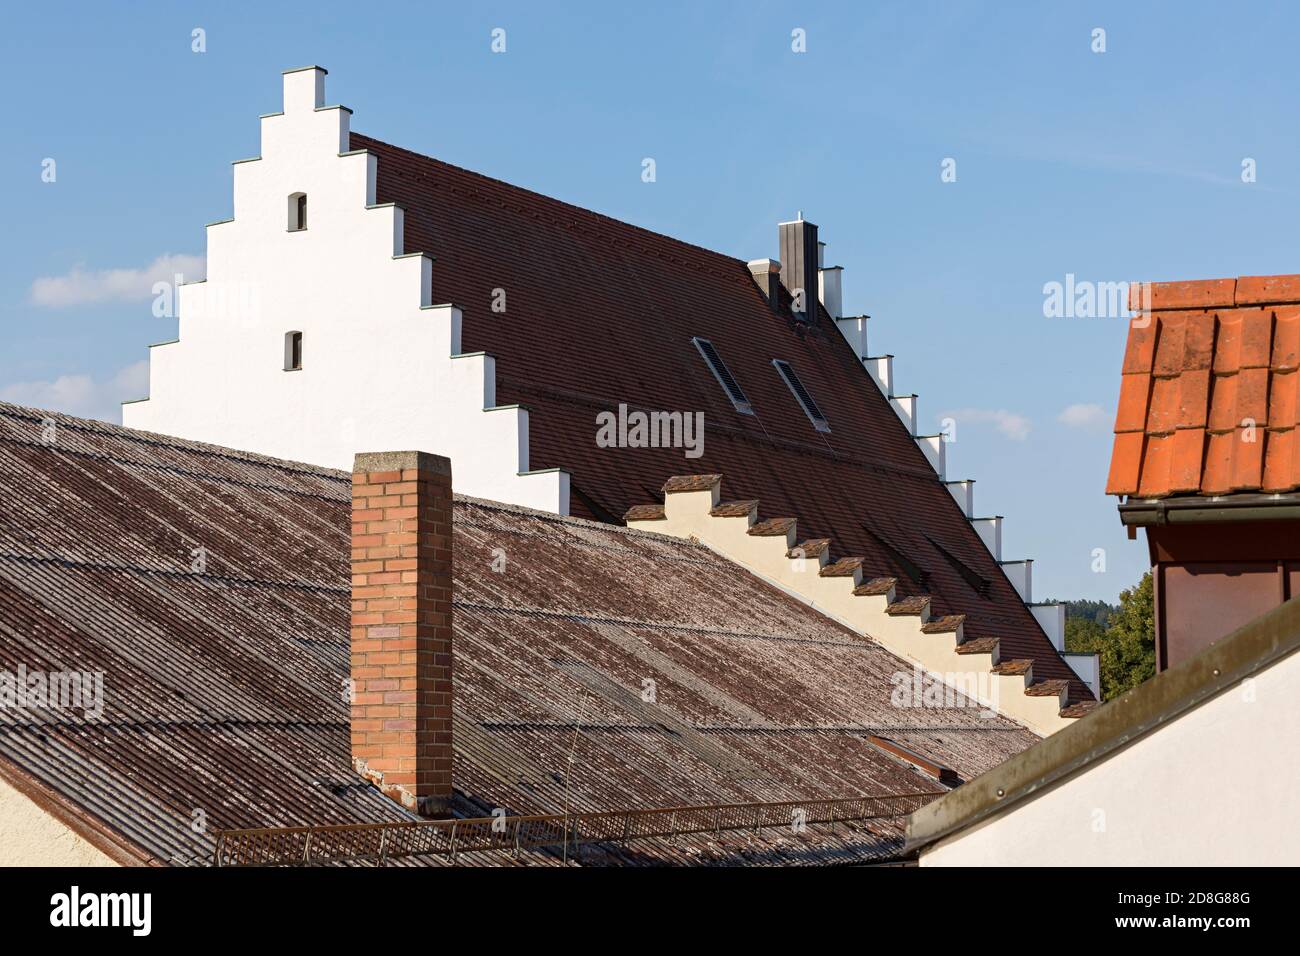 Beilngries, Altstadt, Dächer, Treppengiebel Foto Stock